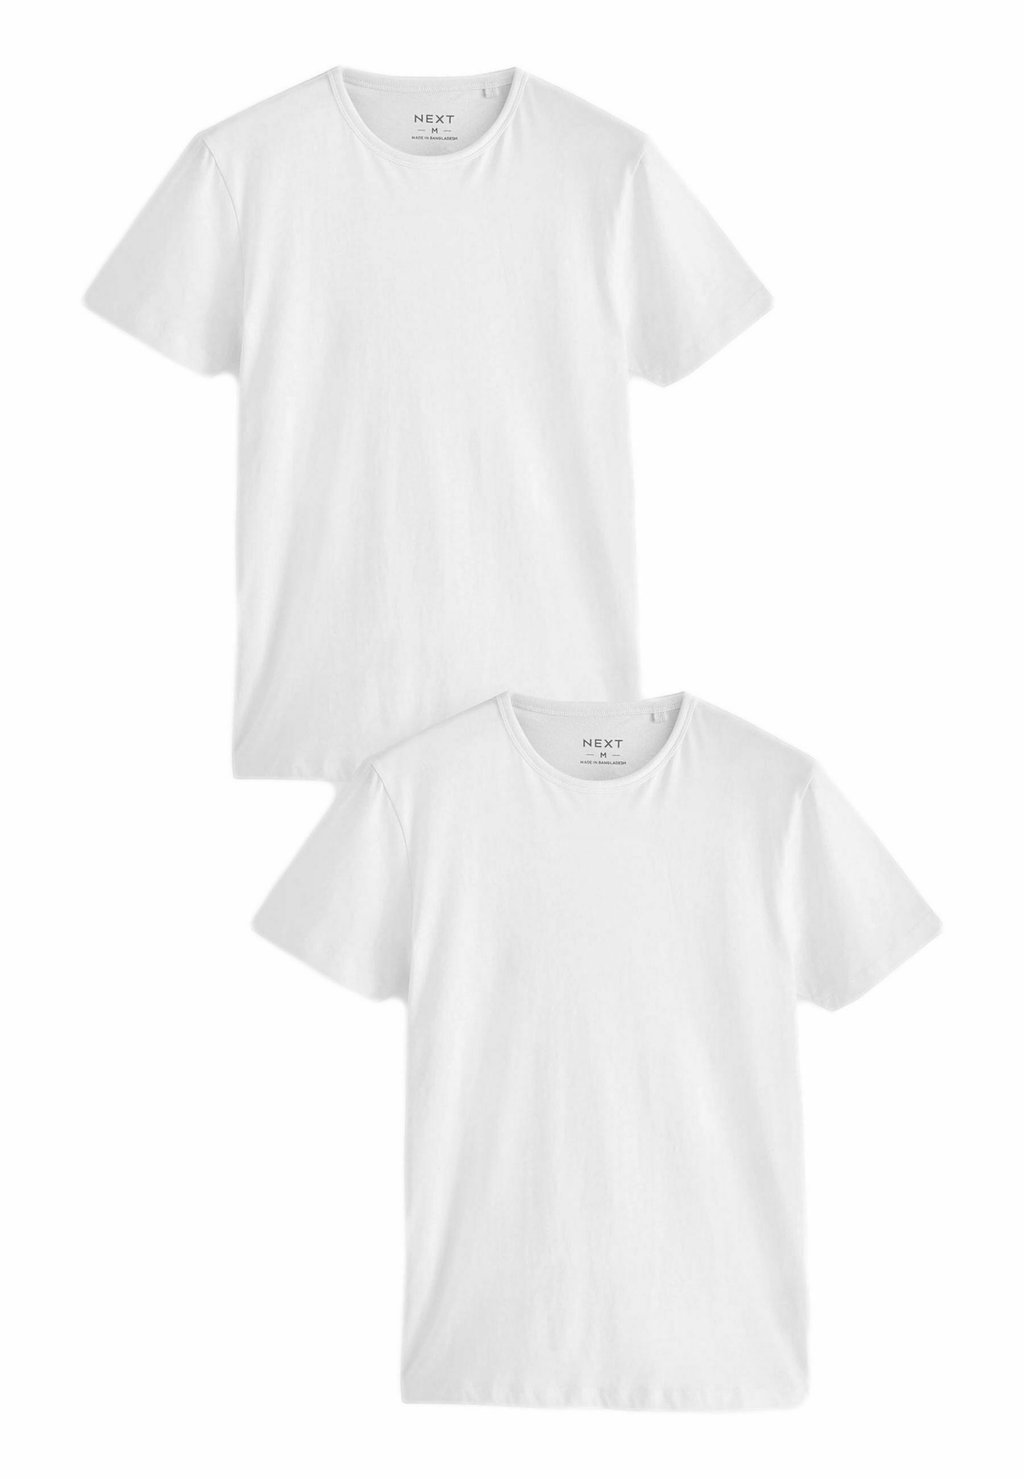 Базовая футболка 2 PACK Next, белый